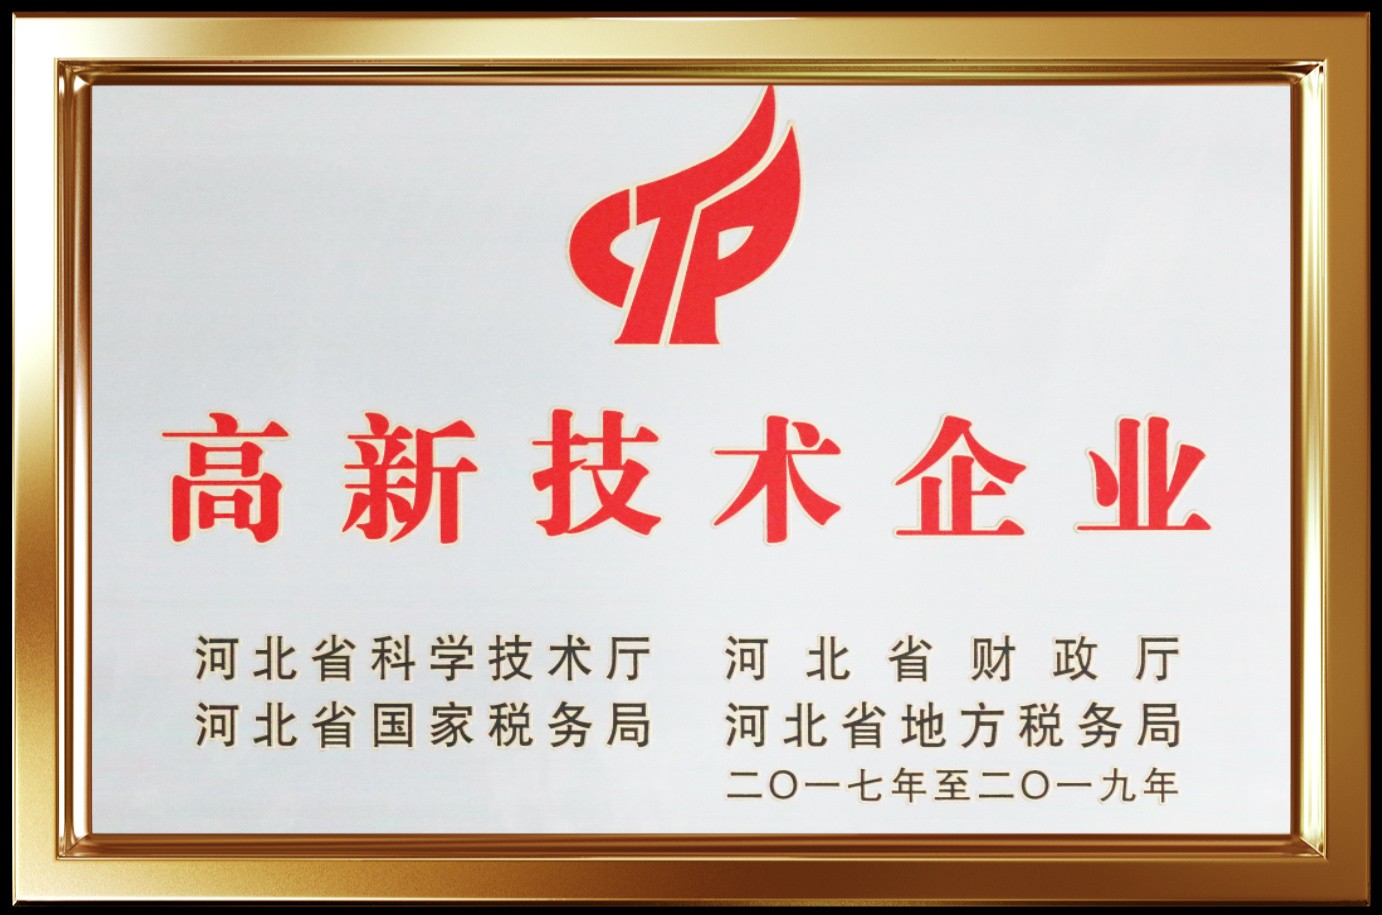 2017年被評為河北省高新技術企業